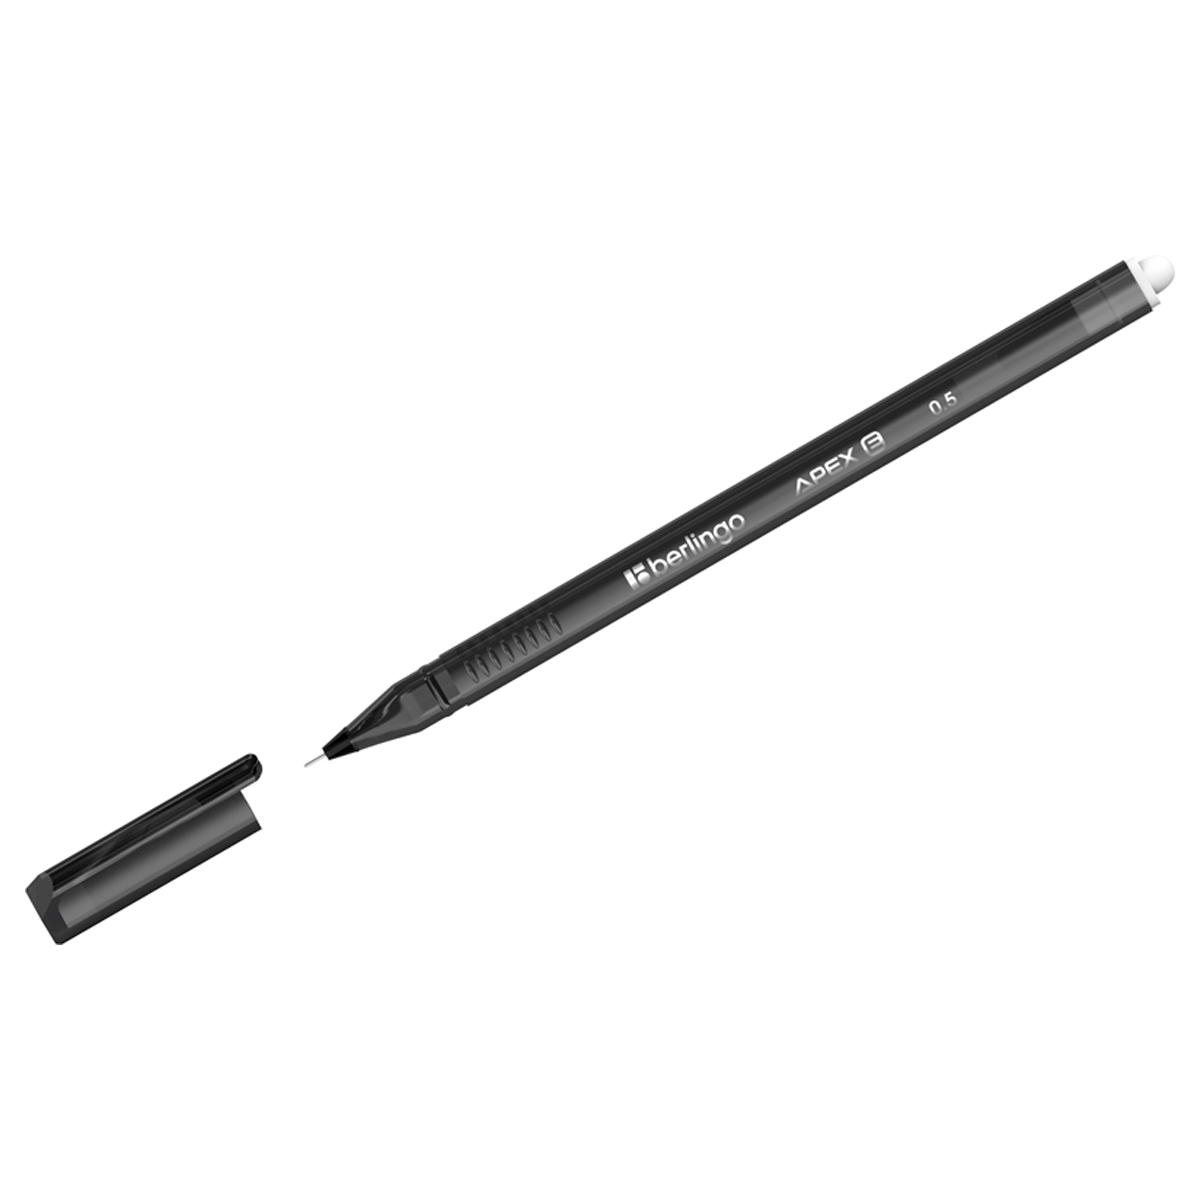 ручка гелевая berlingo apex pro черная 0 5 мм трехгранный корпус Ручка гелевая стираемая Berlingo 